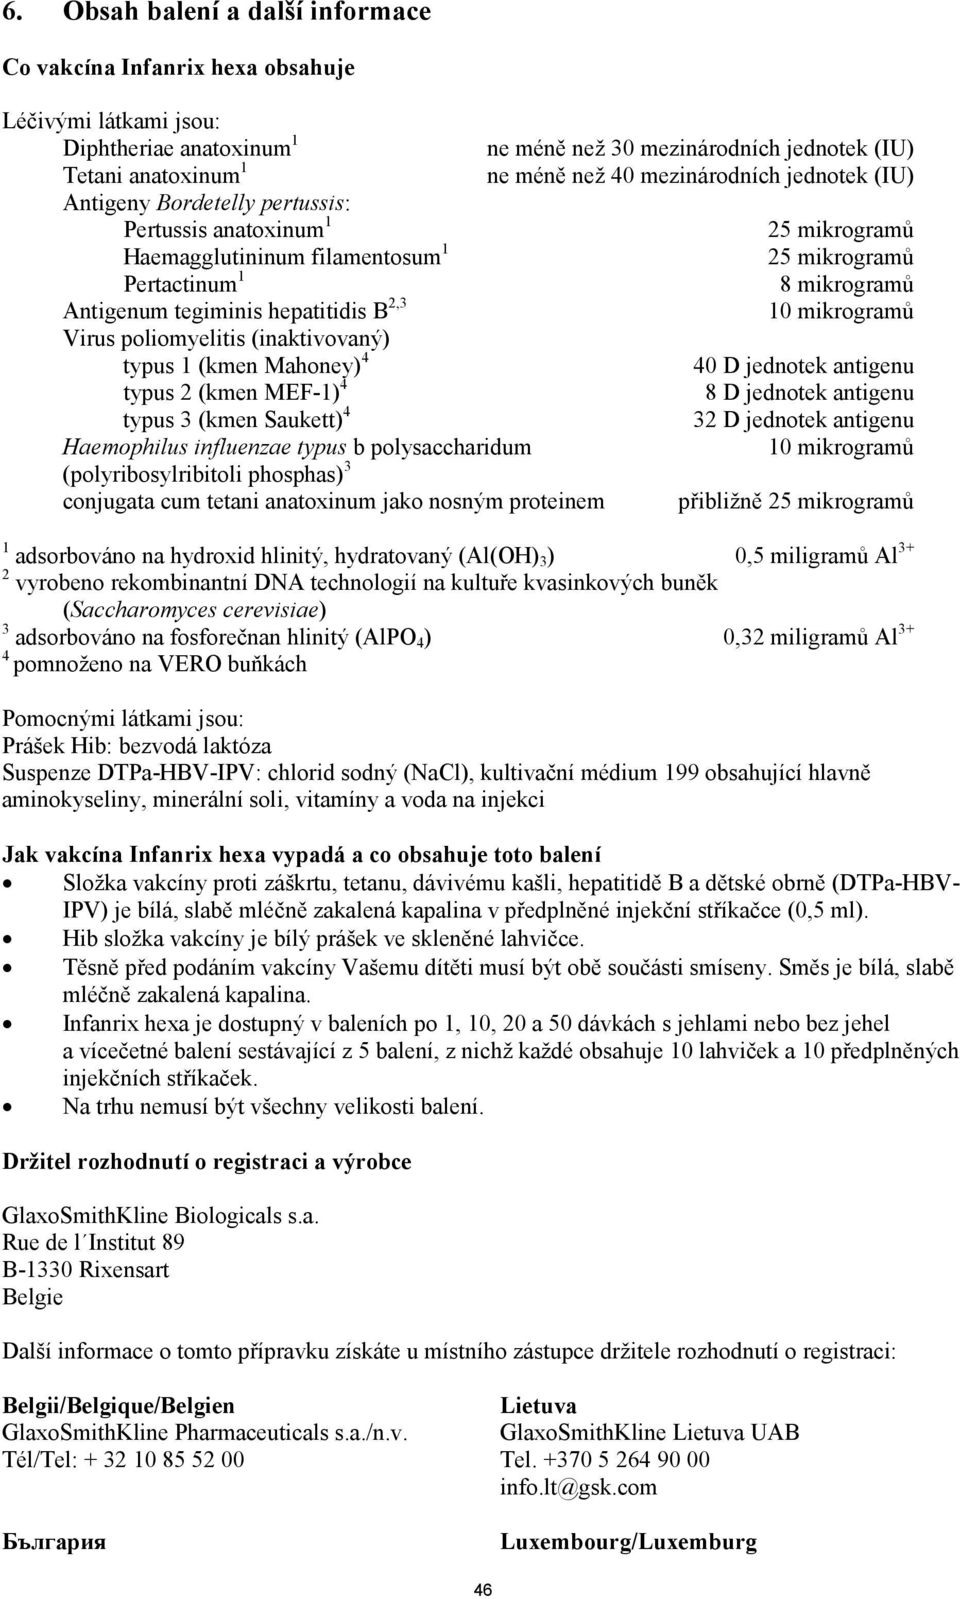 hepatitidis B 2,3 10 mikrogramů Virus poliomyelitis (inaktivovaný) typus 1 (kmen Mahoney) 4 40 D jednotek antigenu typus 2 (kmen MEF-1) 4 8 D jednotek antigenu typus 3 (kmen Saukett) 4 32 D jednotek